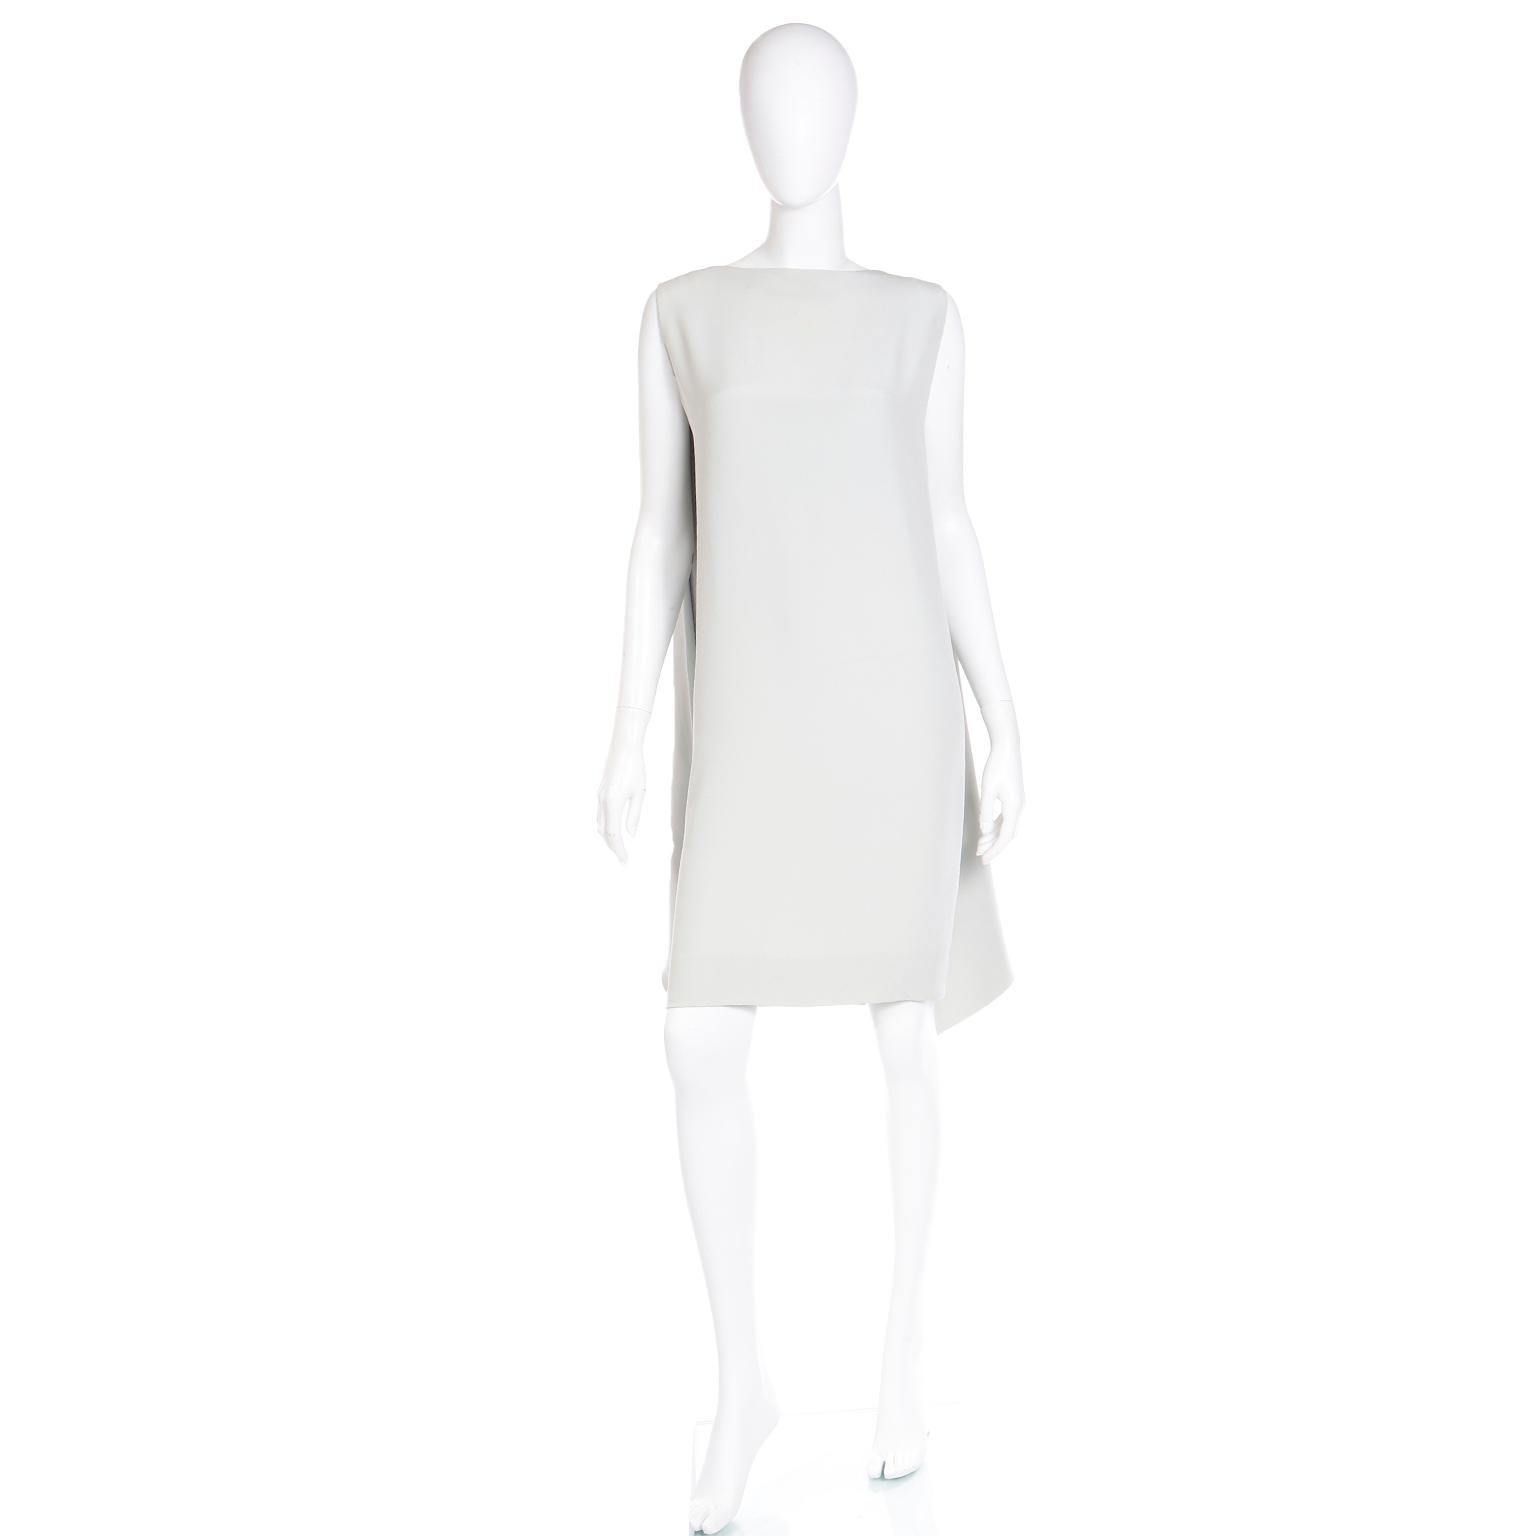 Dieses exquisite Kleid von Pierre Cardin aus den späten 1970er oder frühen 1980er Jahren ist ein Beweis für die Kunstfertigkeit des Designers in Sachen Drapierung und Schneiderei. Getreu dem für ihn typischen Stil dieser Ära steht die scheinbar